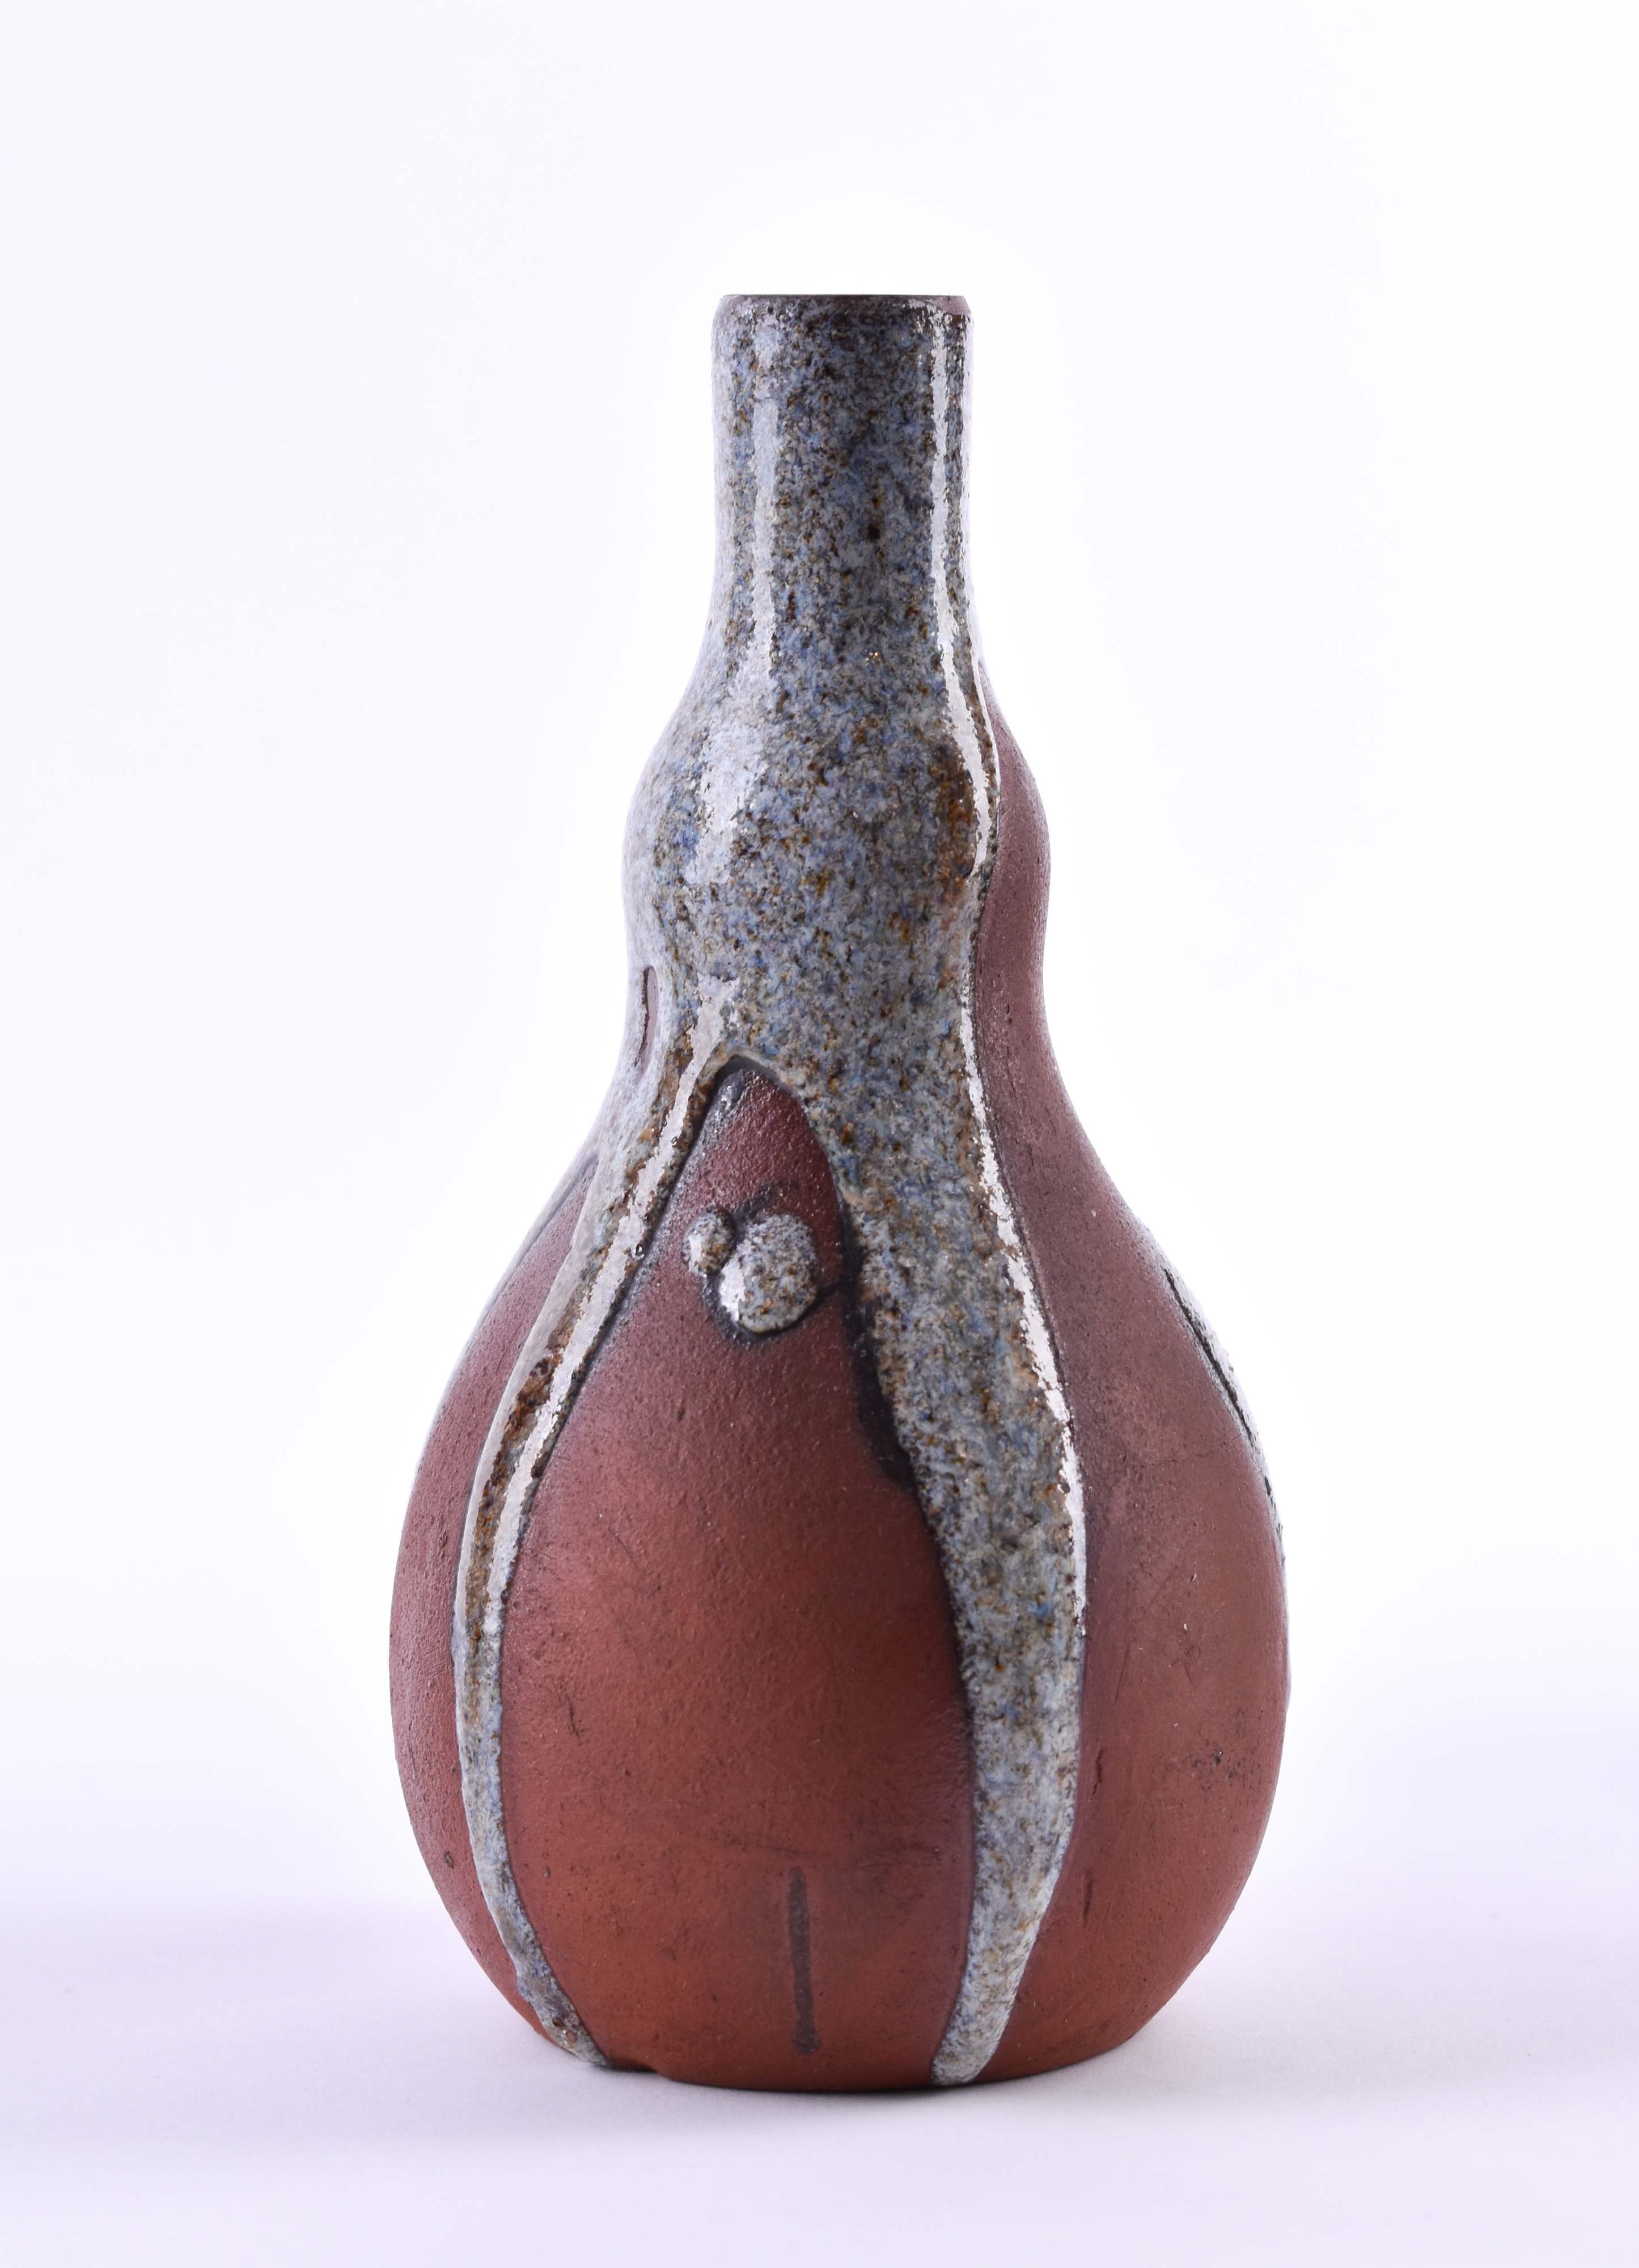  Vase China Qing dynasty - Image 2 of 12